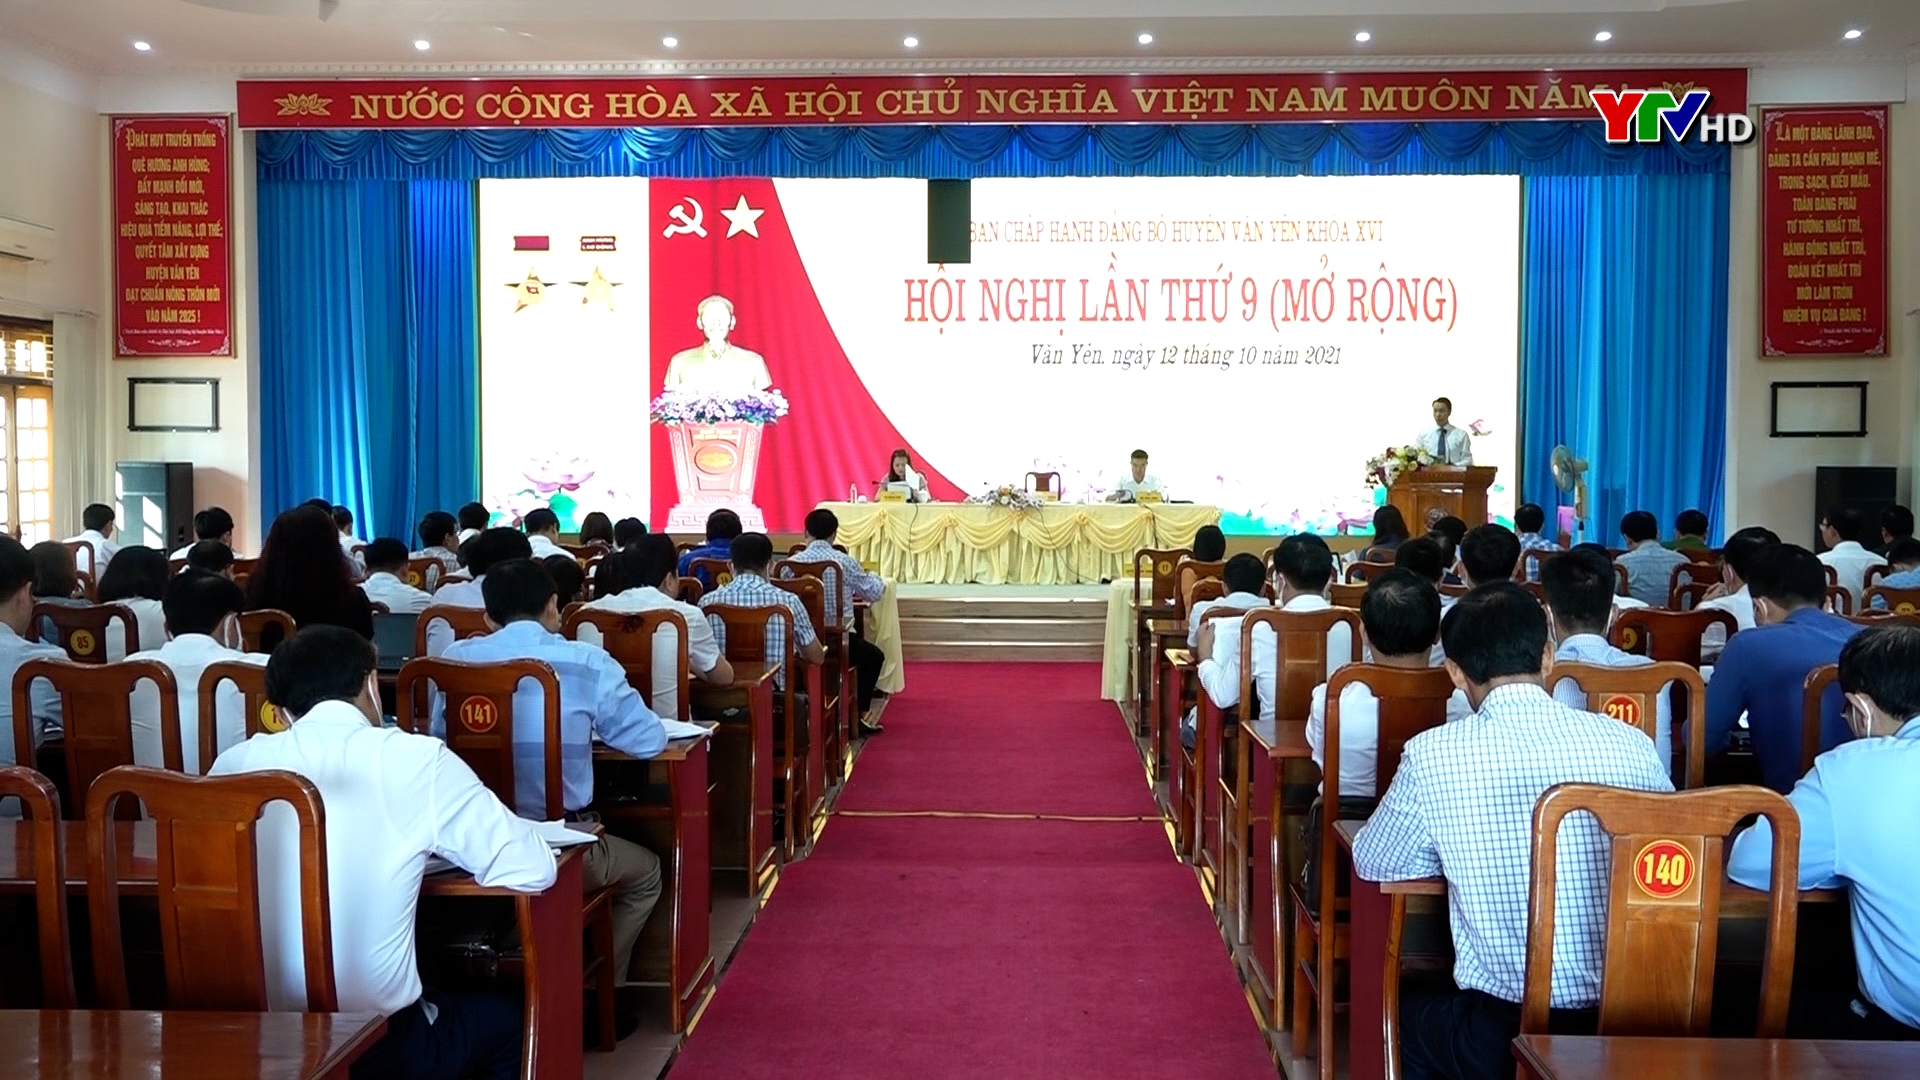 BCH Đảng bộ huyện Văn Yên tổ chức Hội nghị lần thứ 9 ( mở rộng )